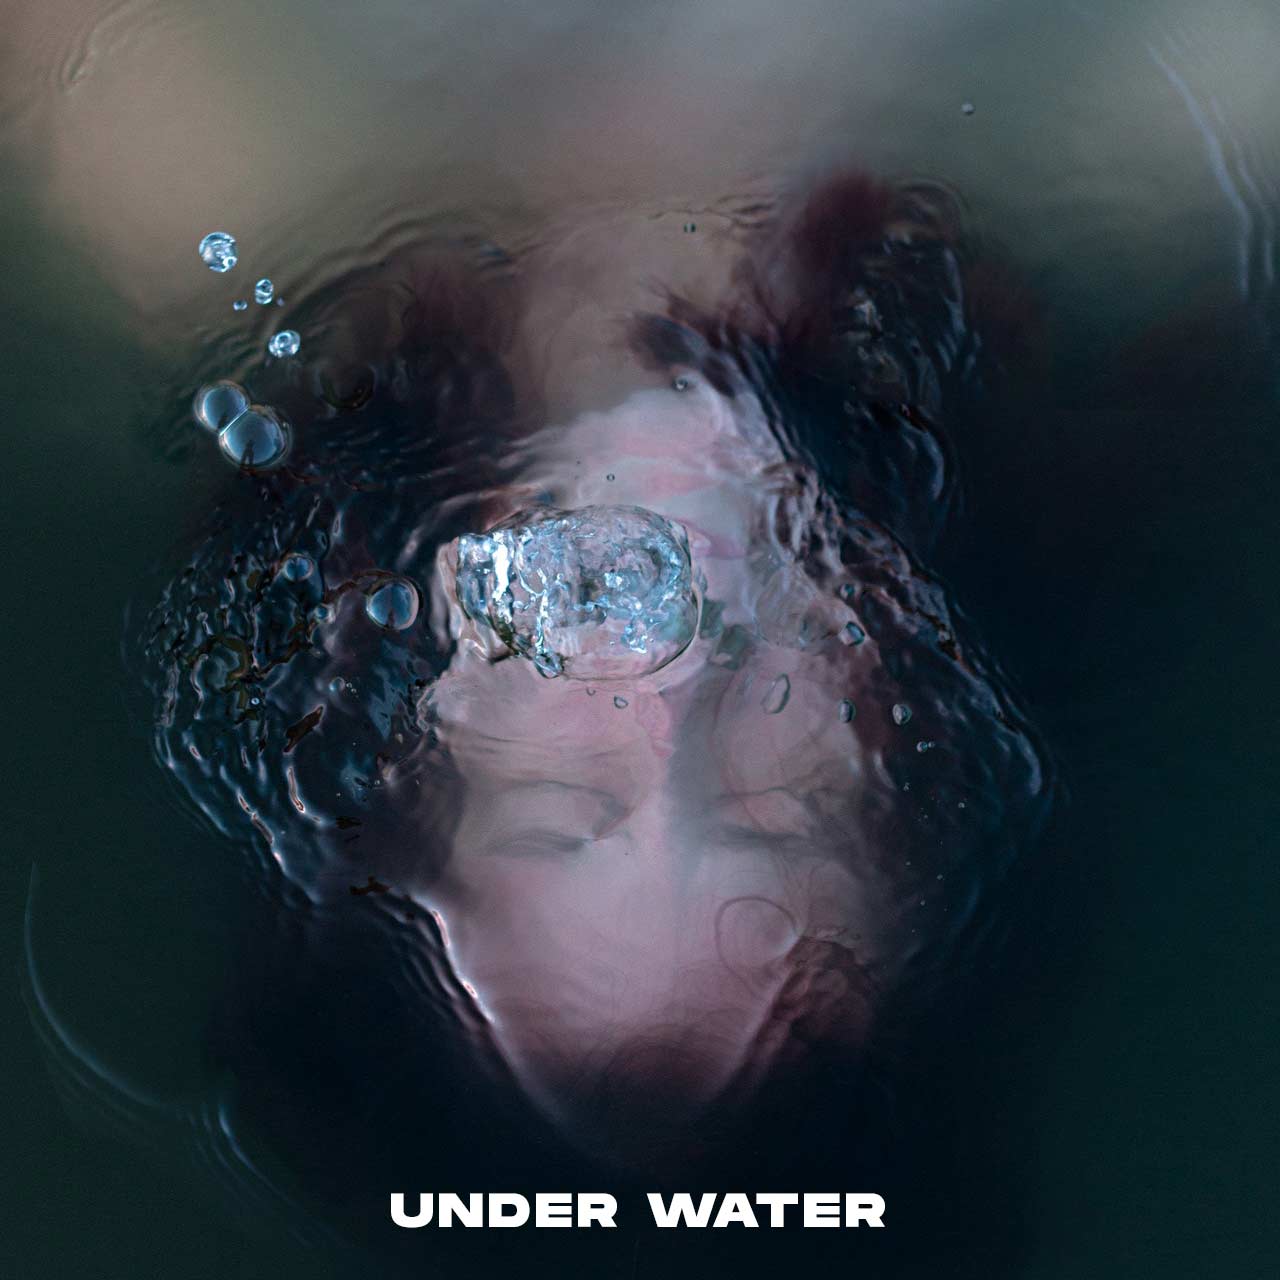 person-underwater-3405555